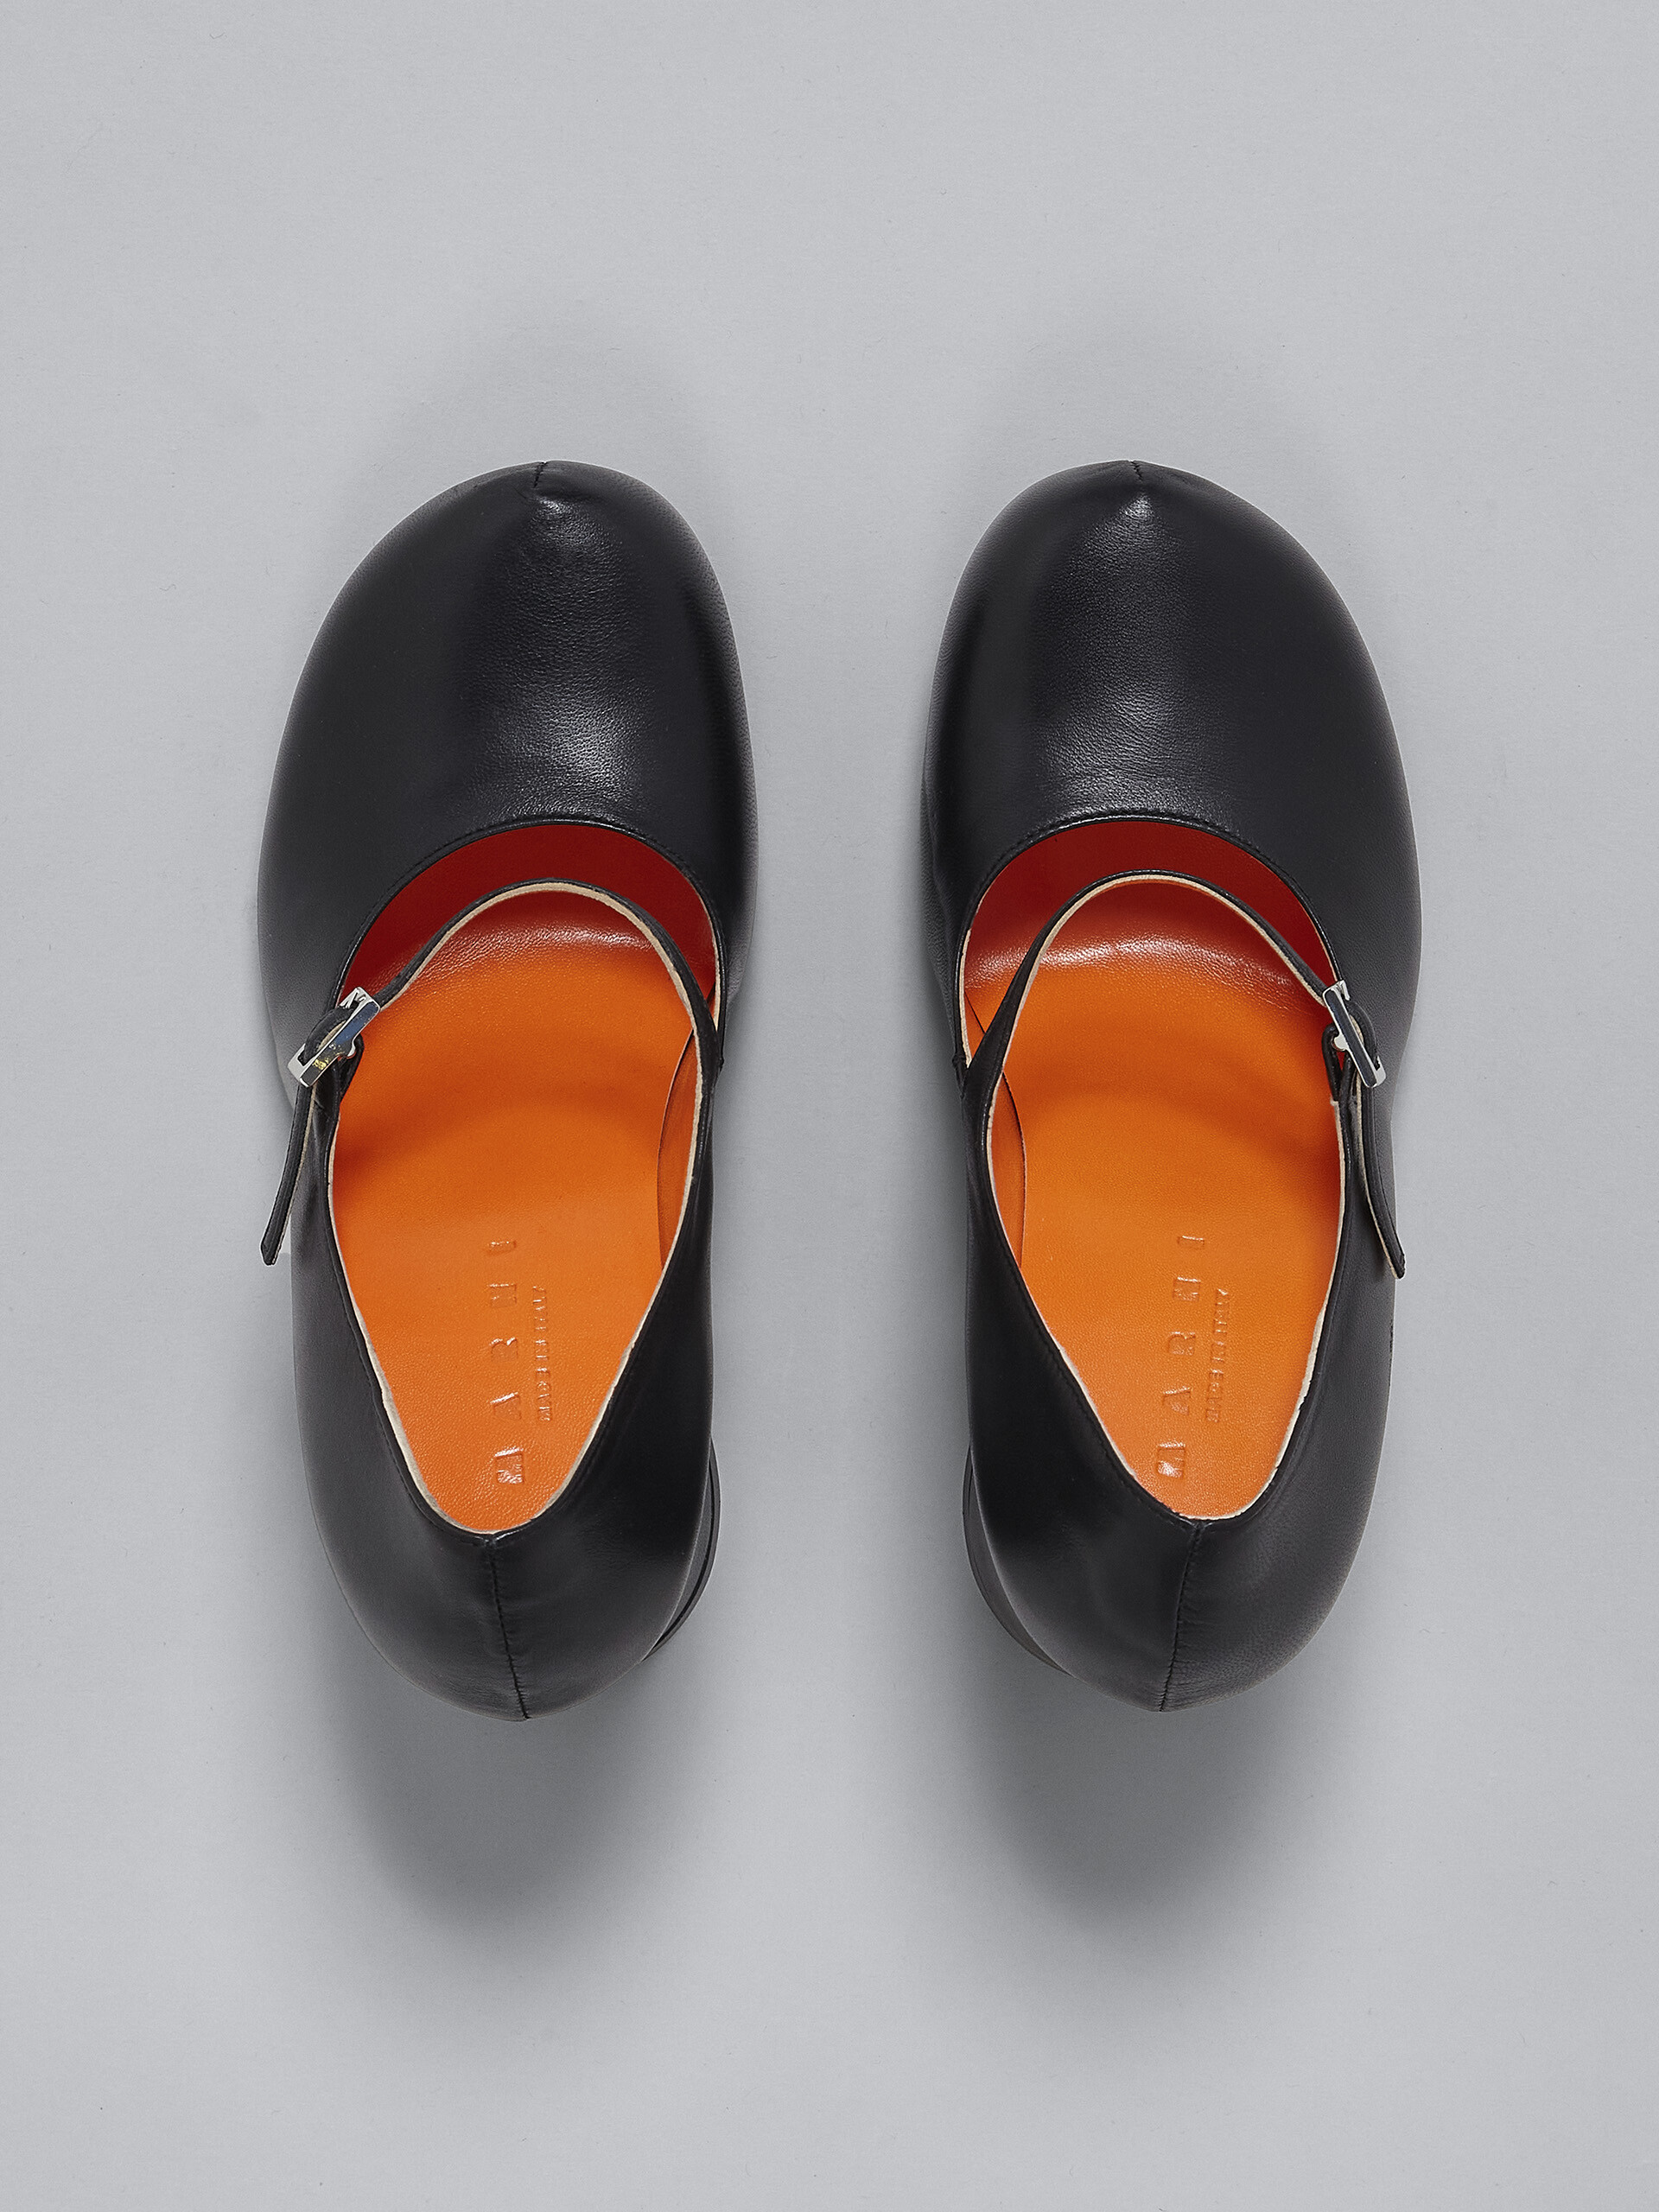 Zapatos de salón Mary Jane de piel negra - Salones - Image 4